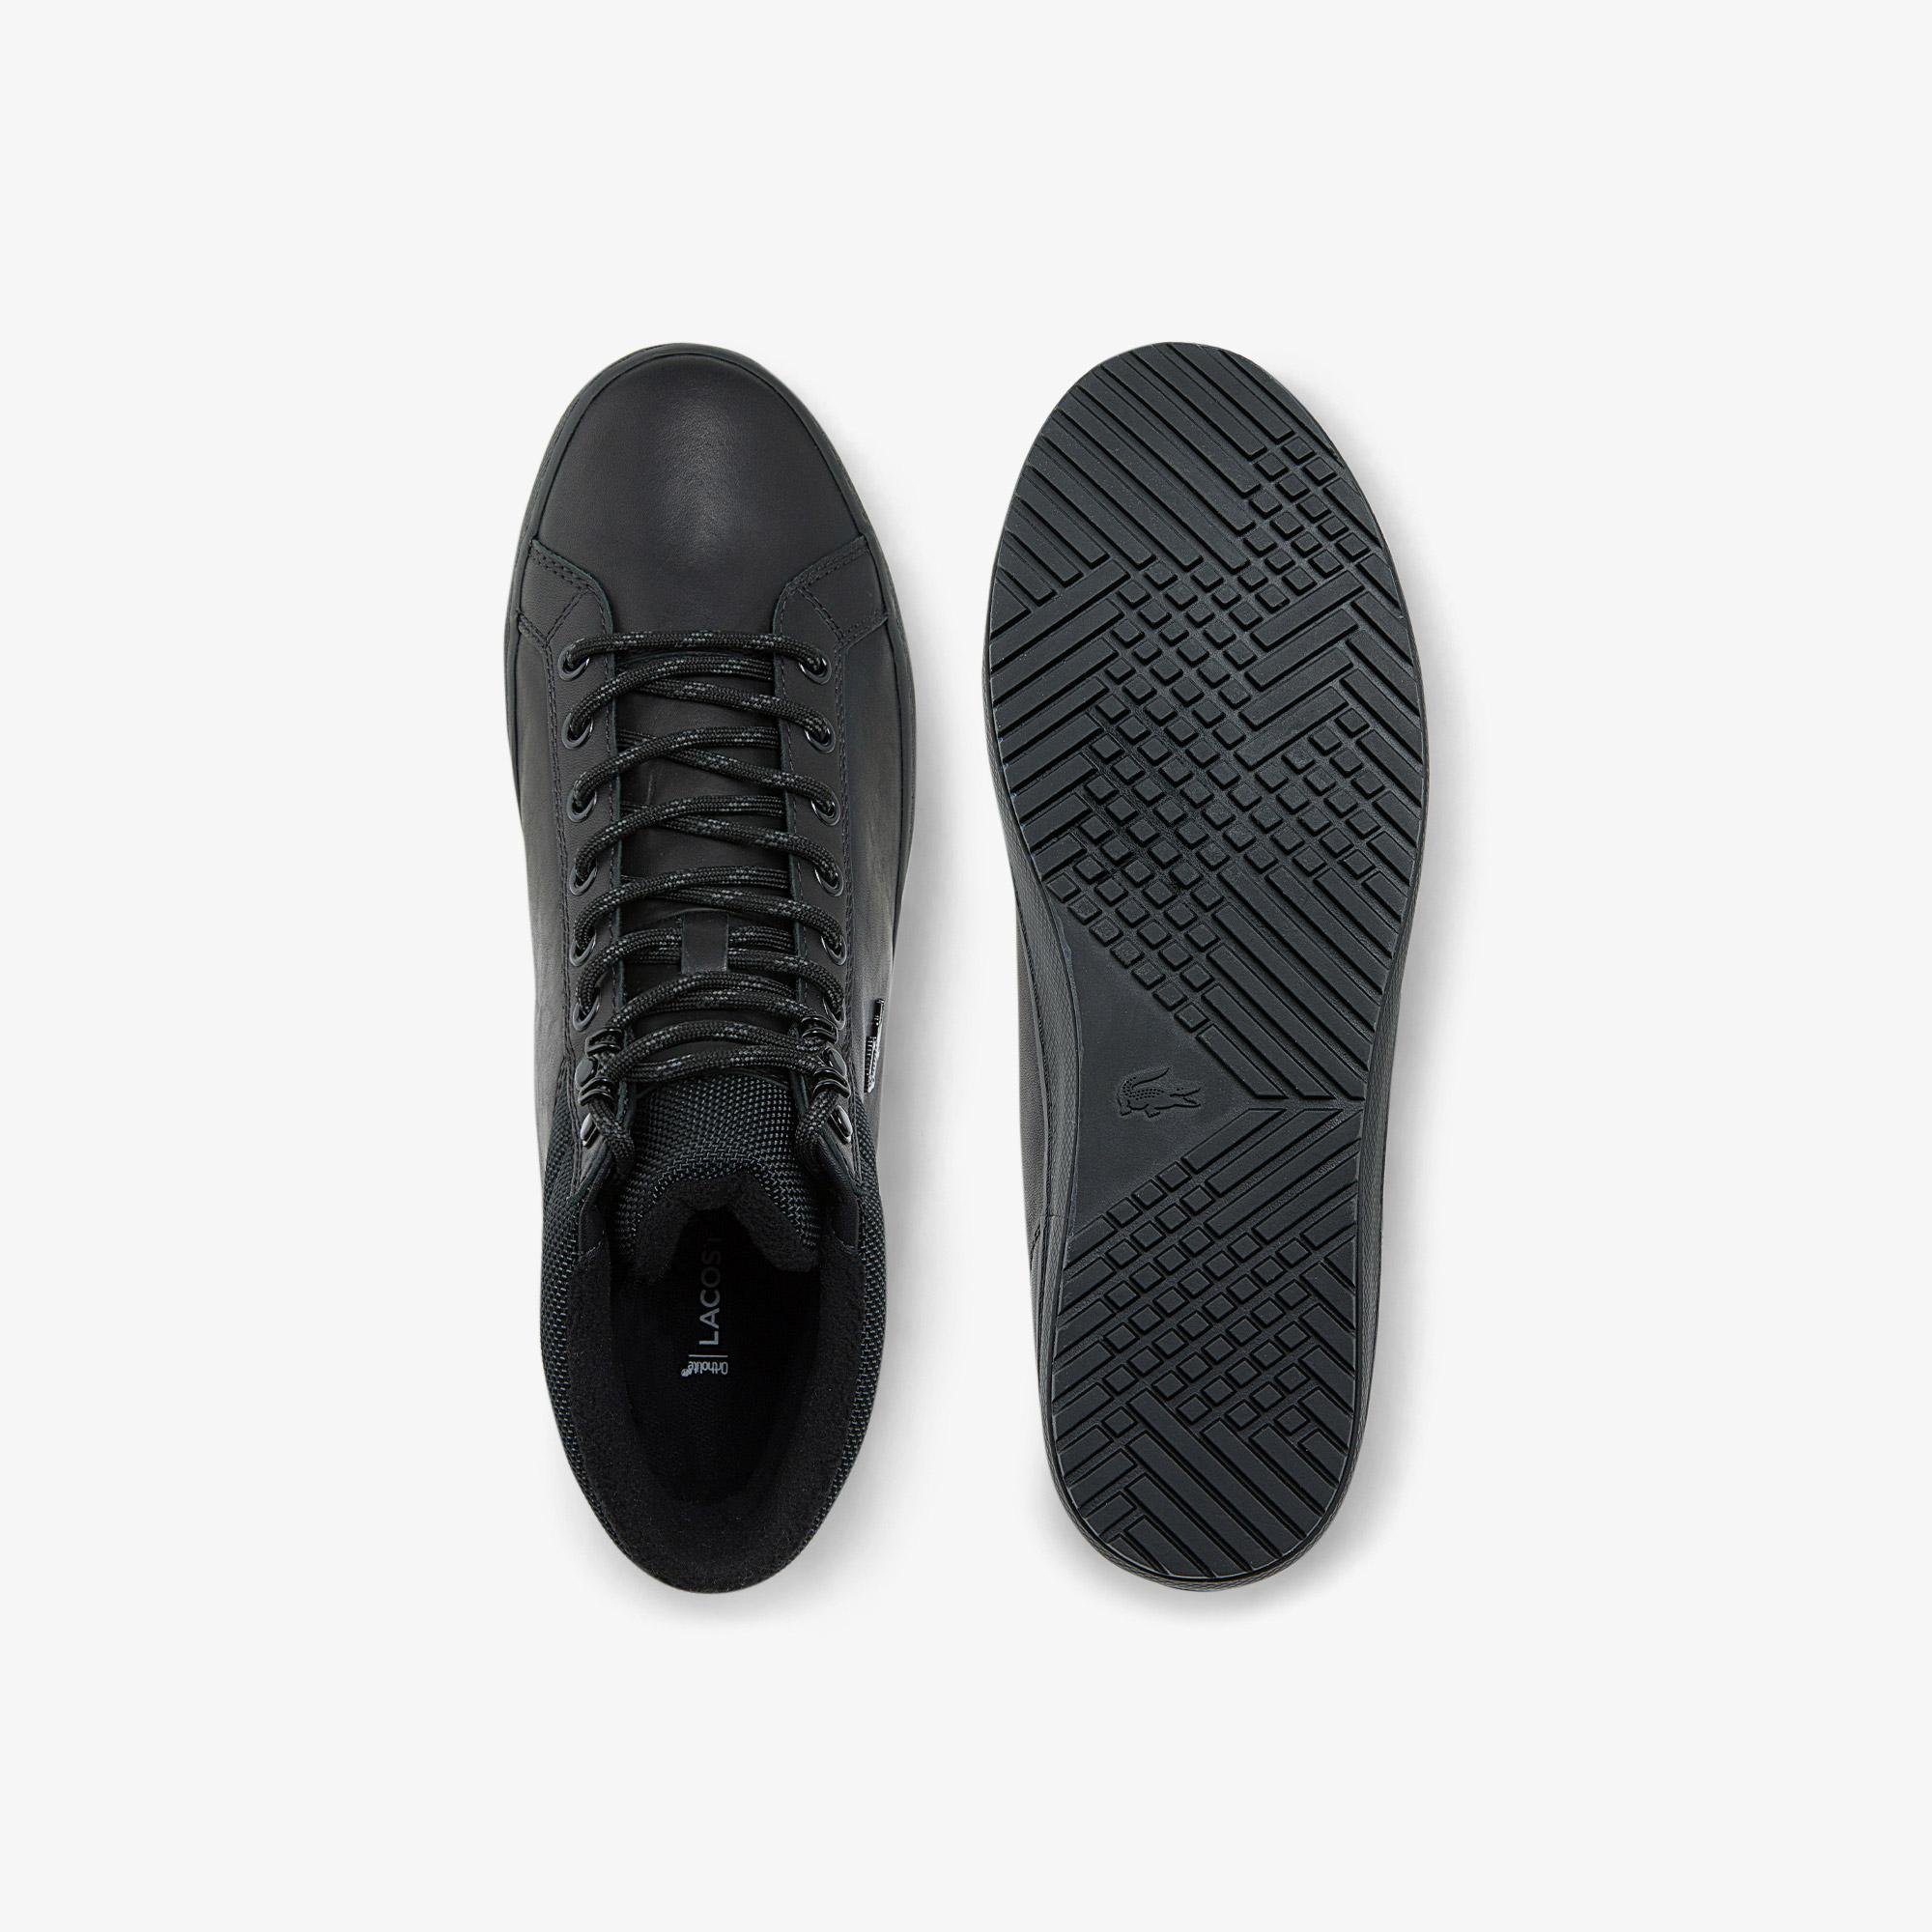 
Lacoste Men's leather shoes